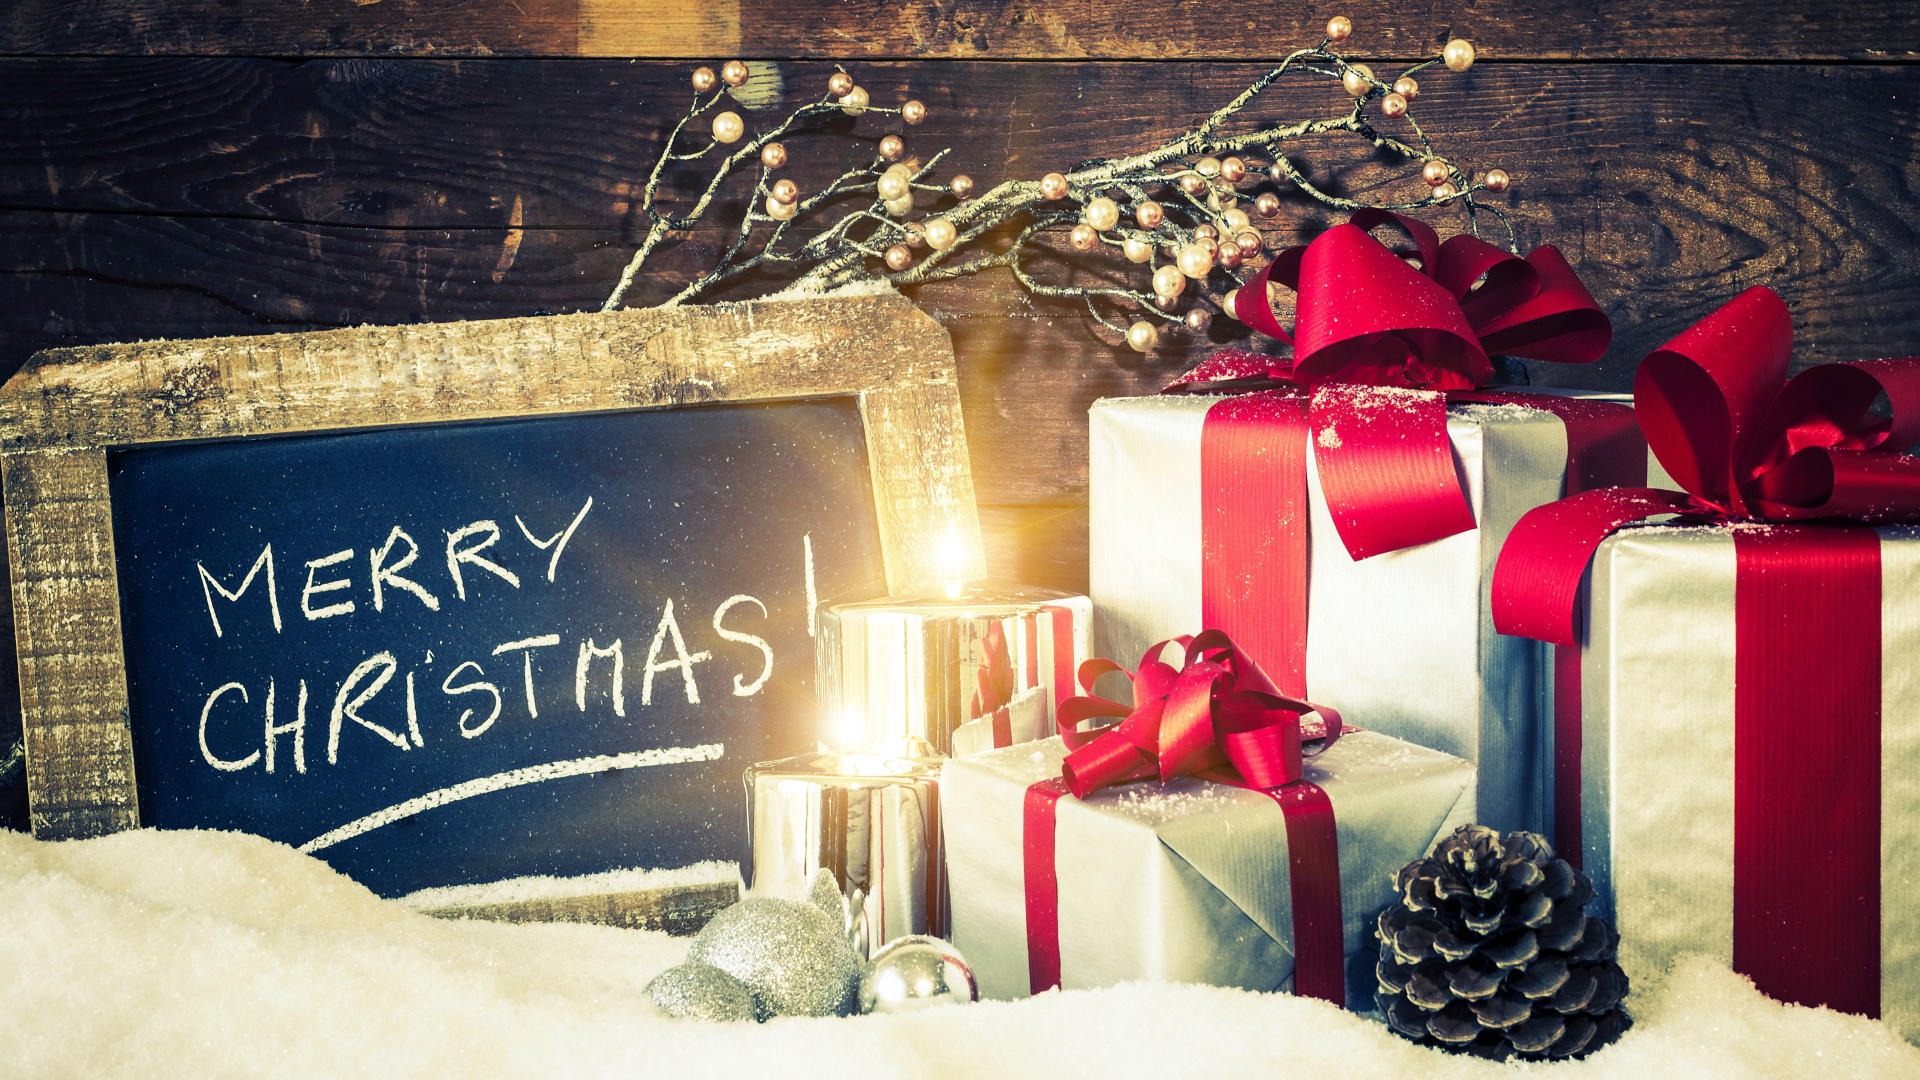 圣诞节的装饰品, 圣诞节礼物, 礼物, 新的一年, 圣诞装饰 壁纸 1920x1080 允许